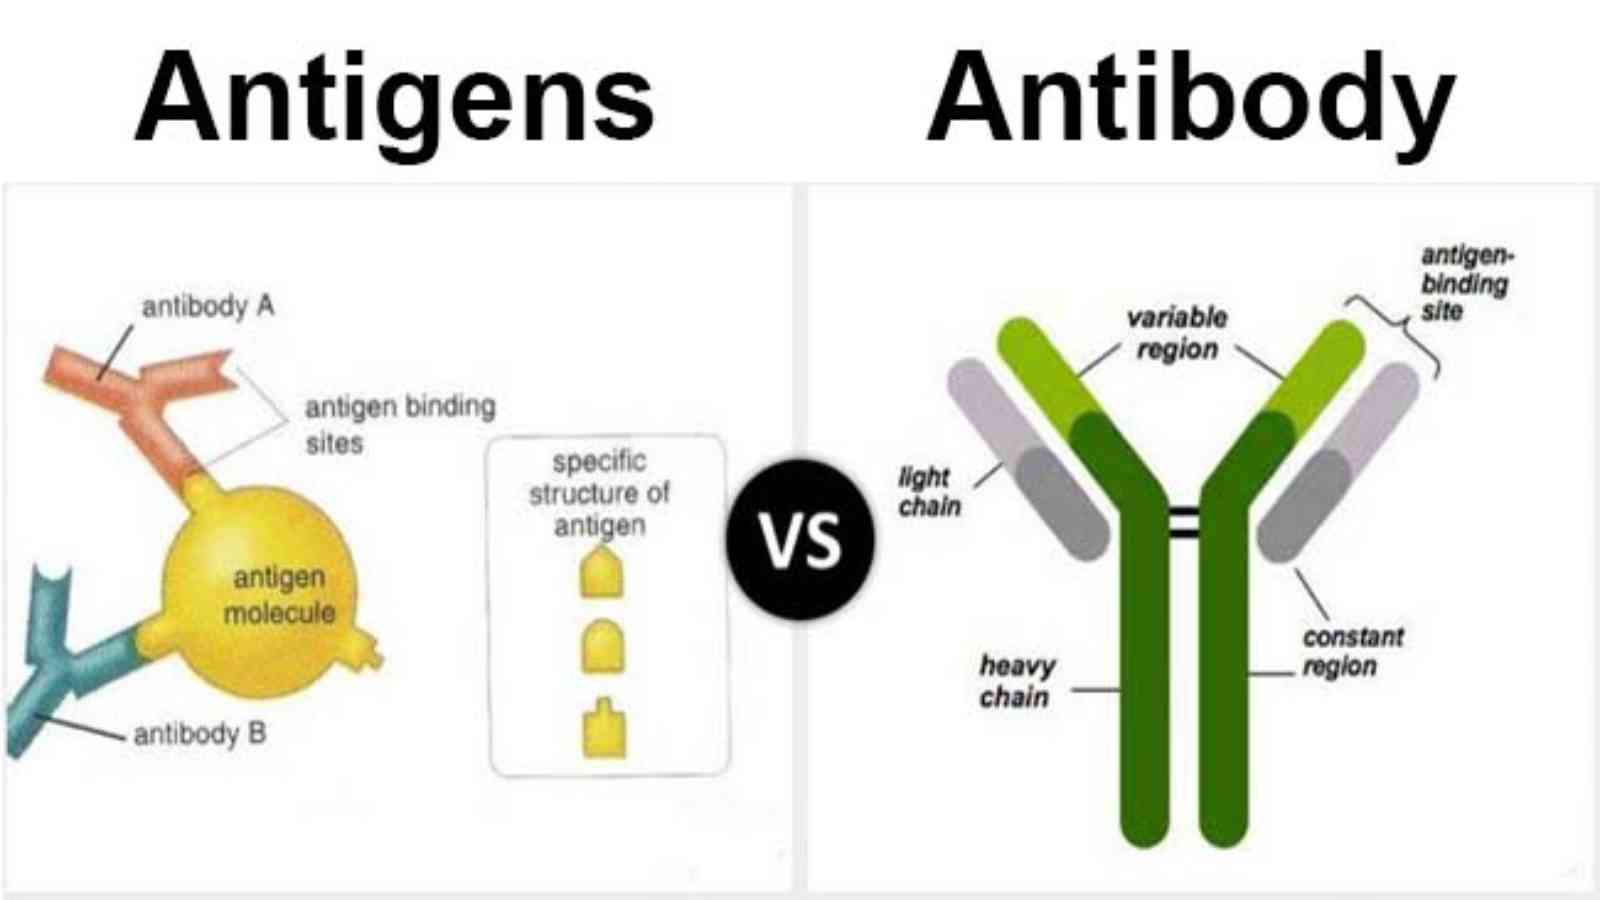 presentation of antigen means